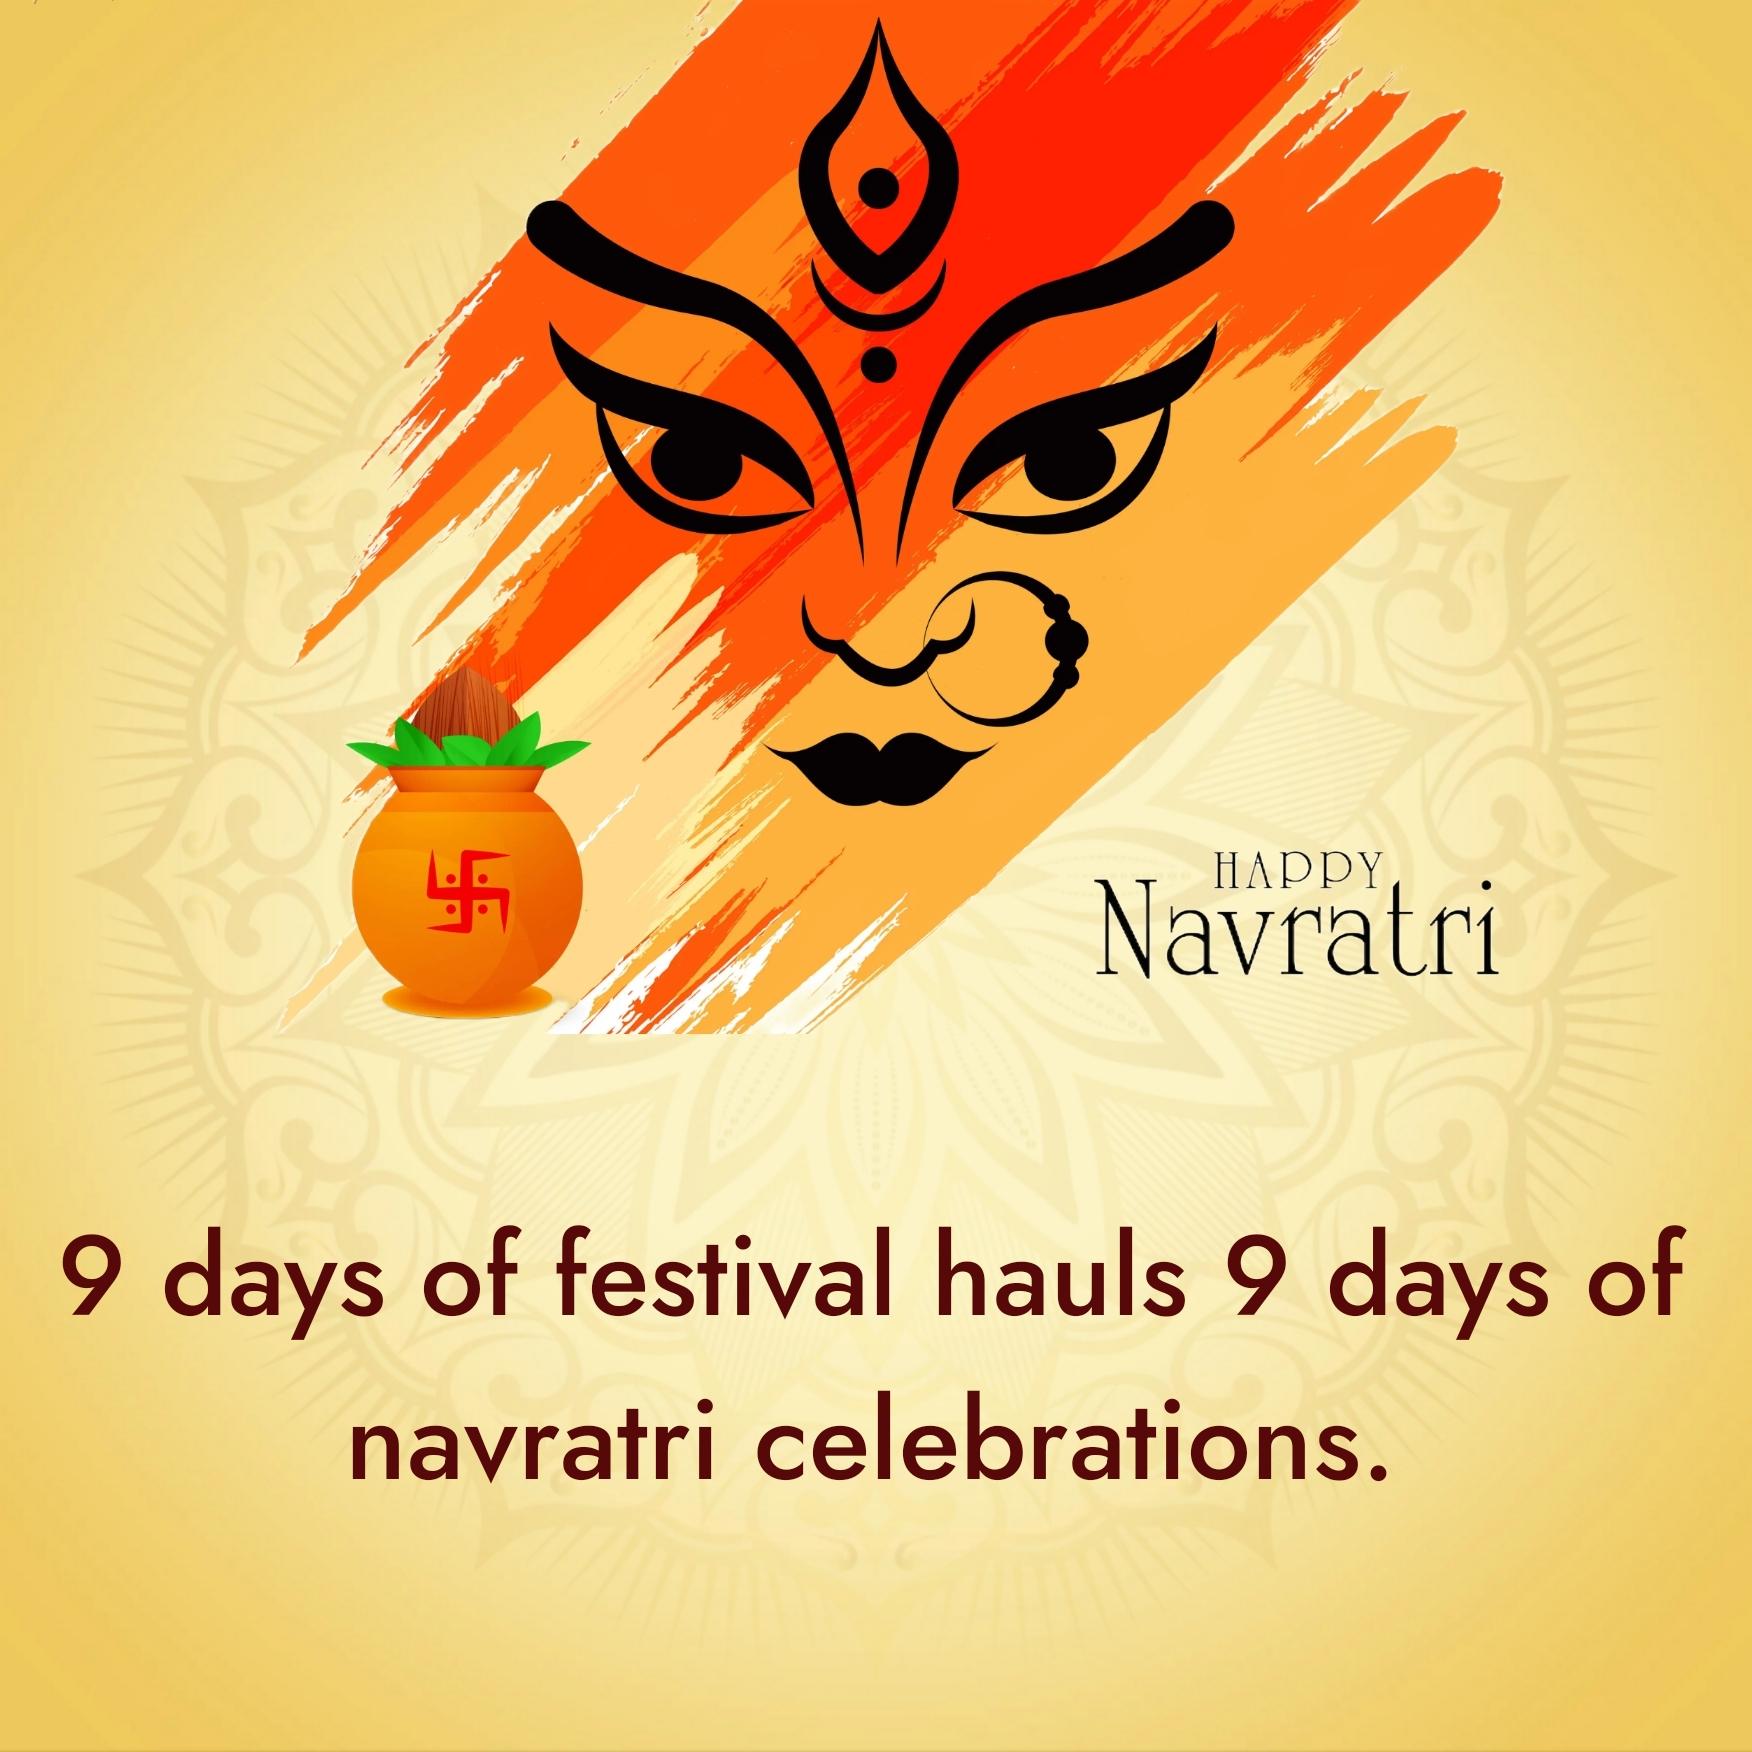 9 days of festival hauls 9 days of navratri celebrations